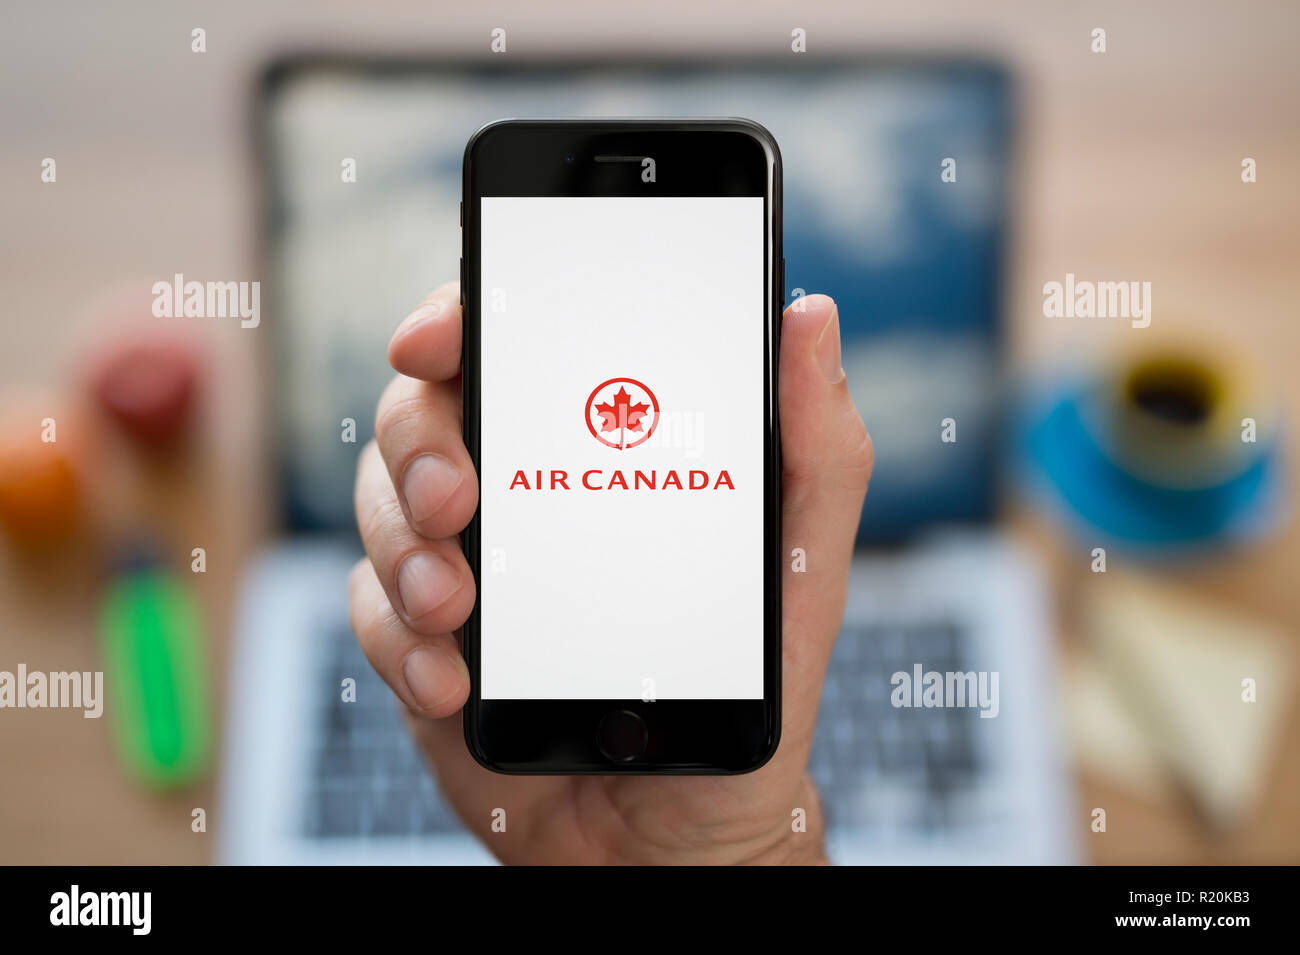 Un hombre mira el iPhone que muestra el logotipo de Air Canada, mientras estaba sentado en su escritorio de ordenador (uso Editorial solamente). Foto de stock